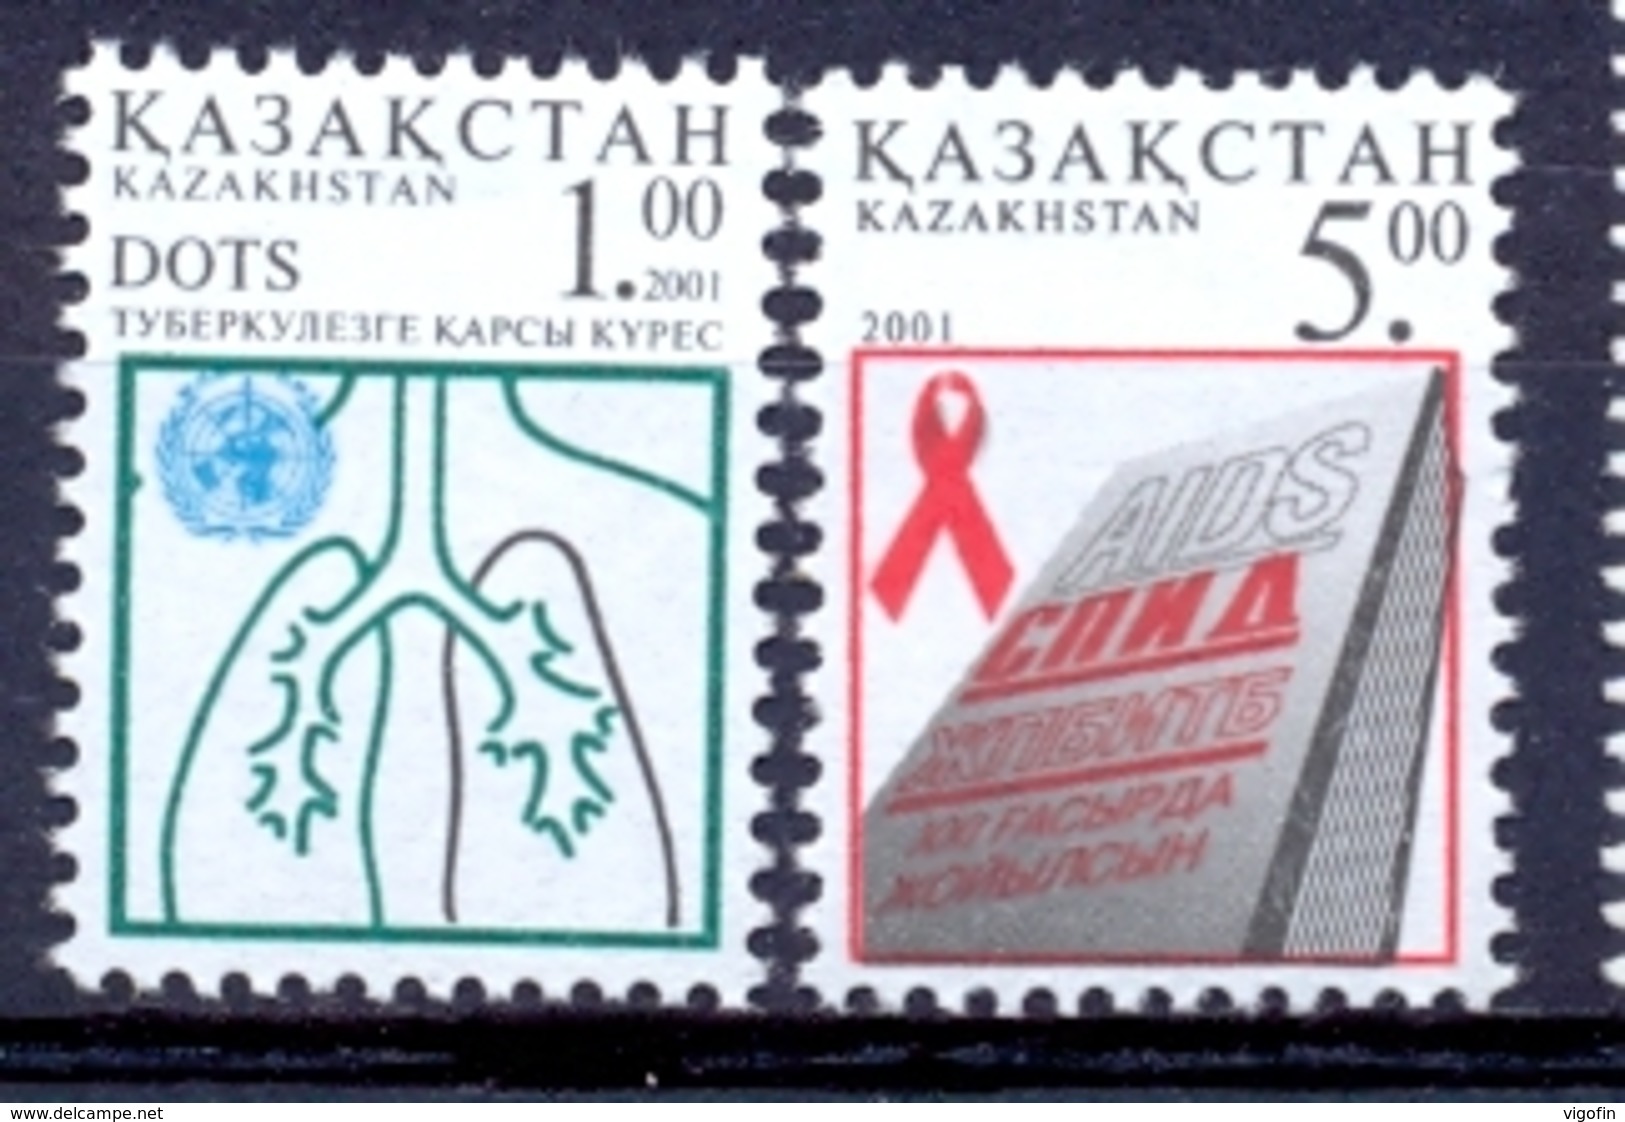 KZ 2001-338-9 Against Aids, KAZAKISTAN, 1 X 2v, MNH - Kazajstán